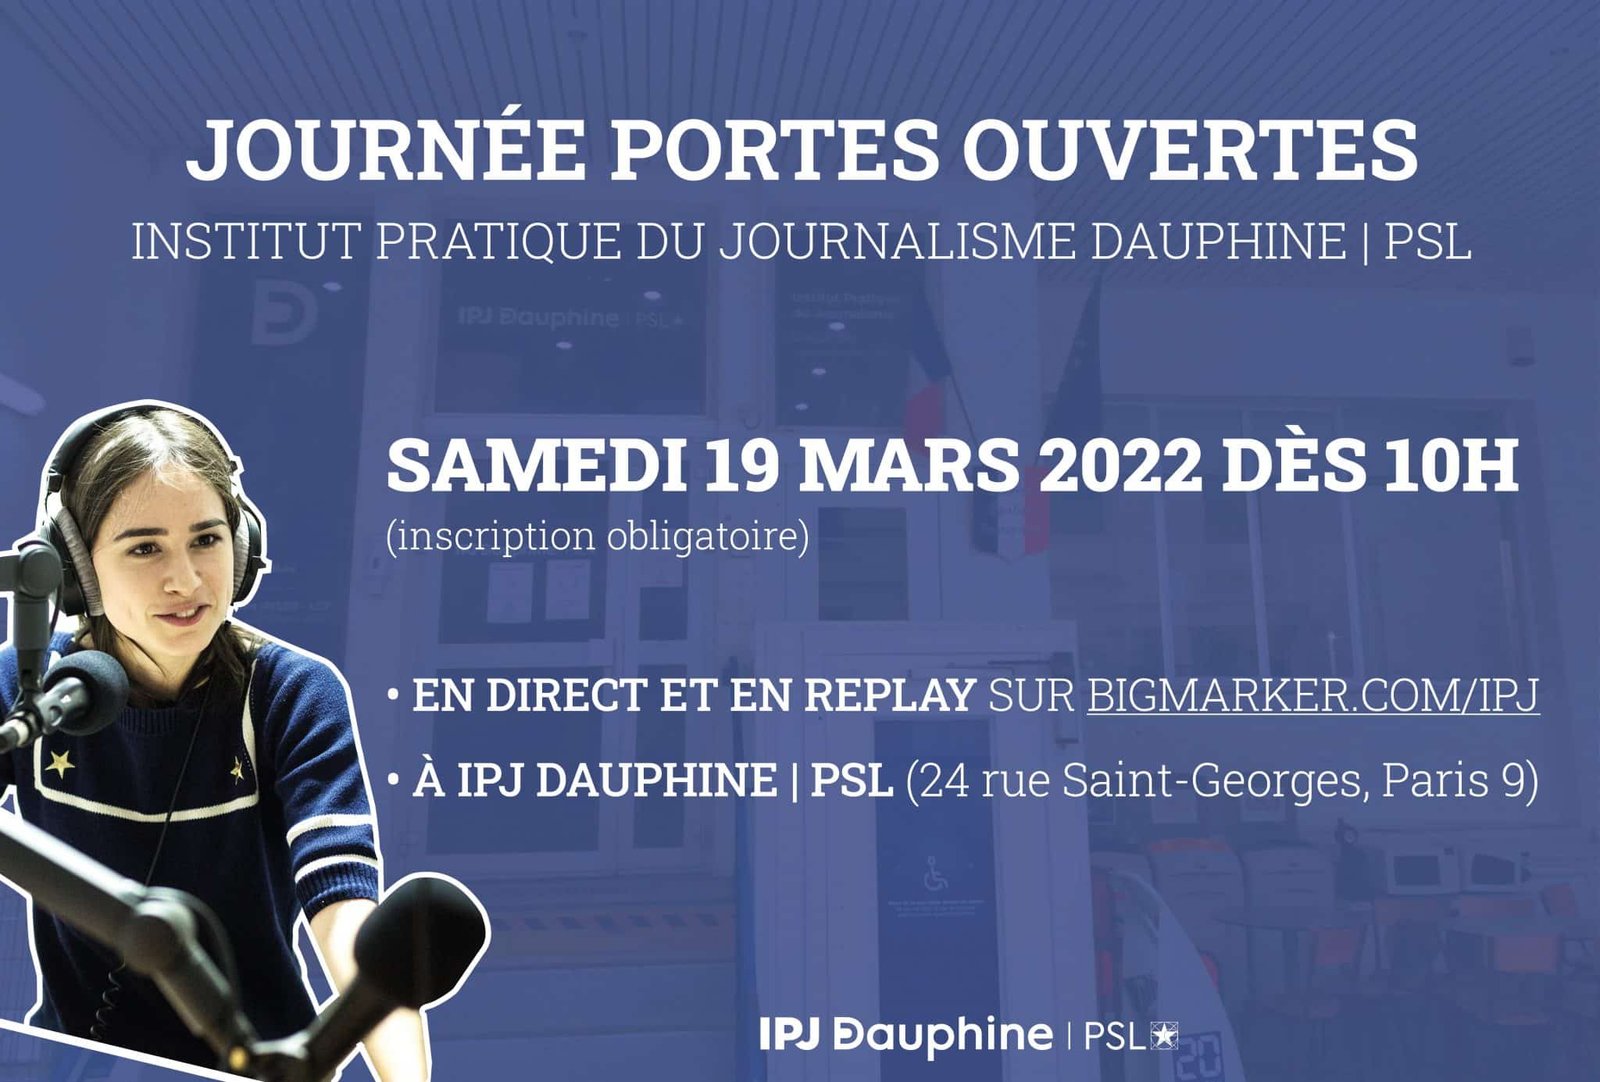 Journée Portes Ouvertes 2022 d’IPJ Dauphine | PSL